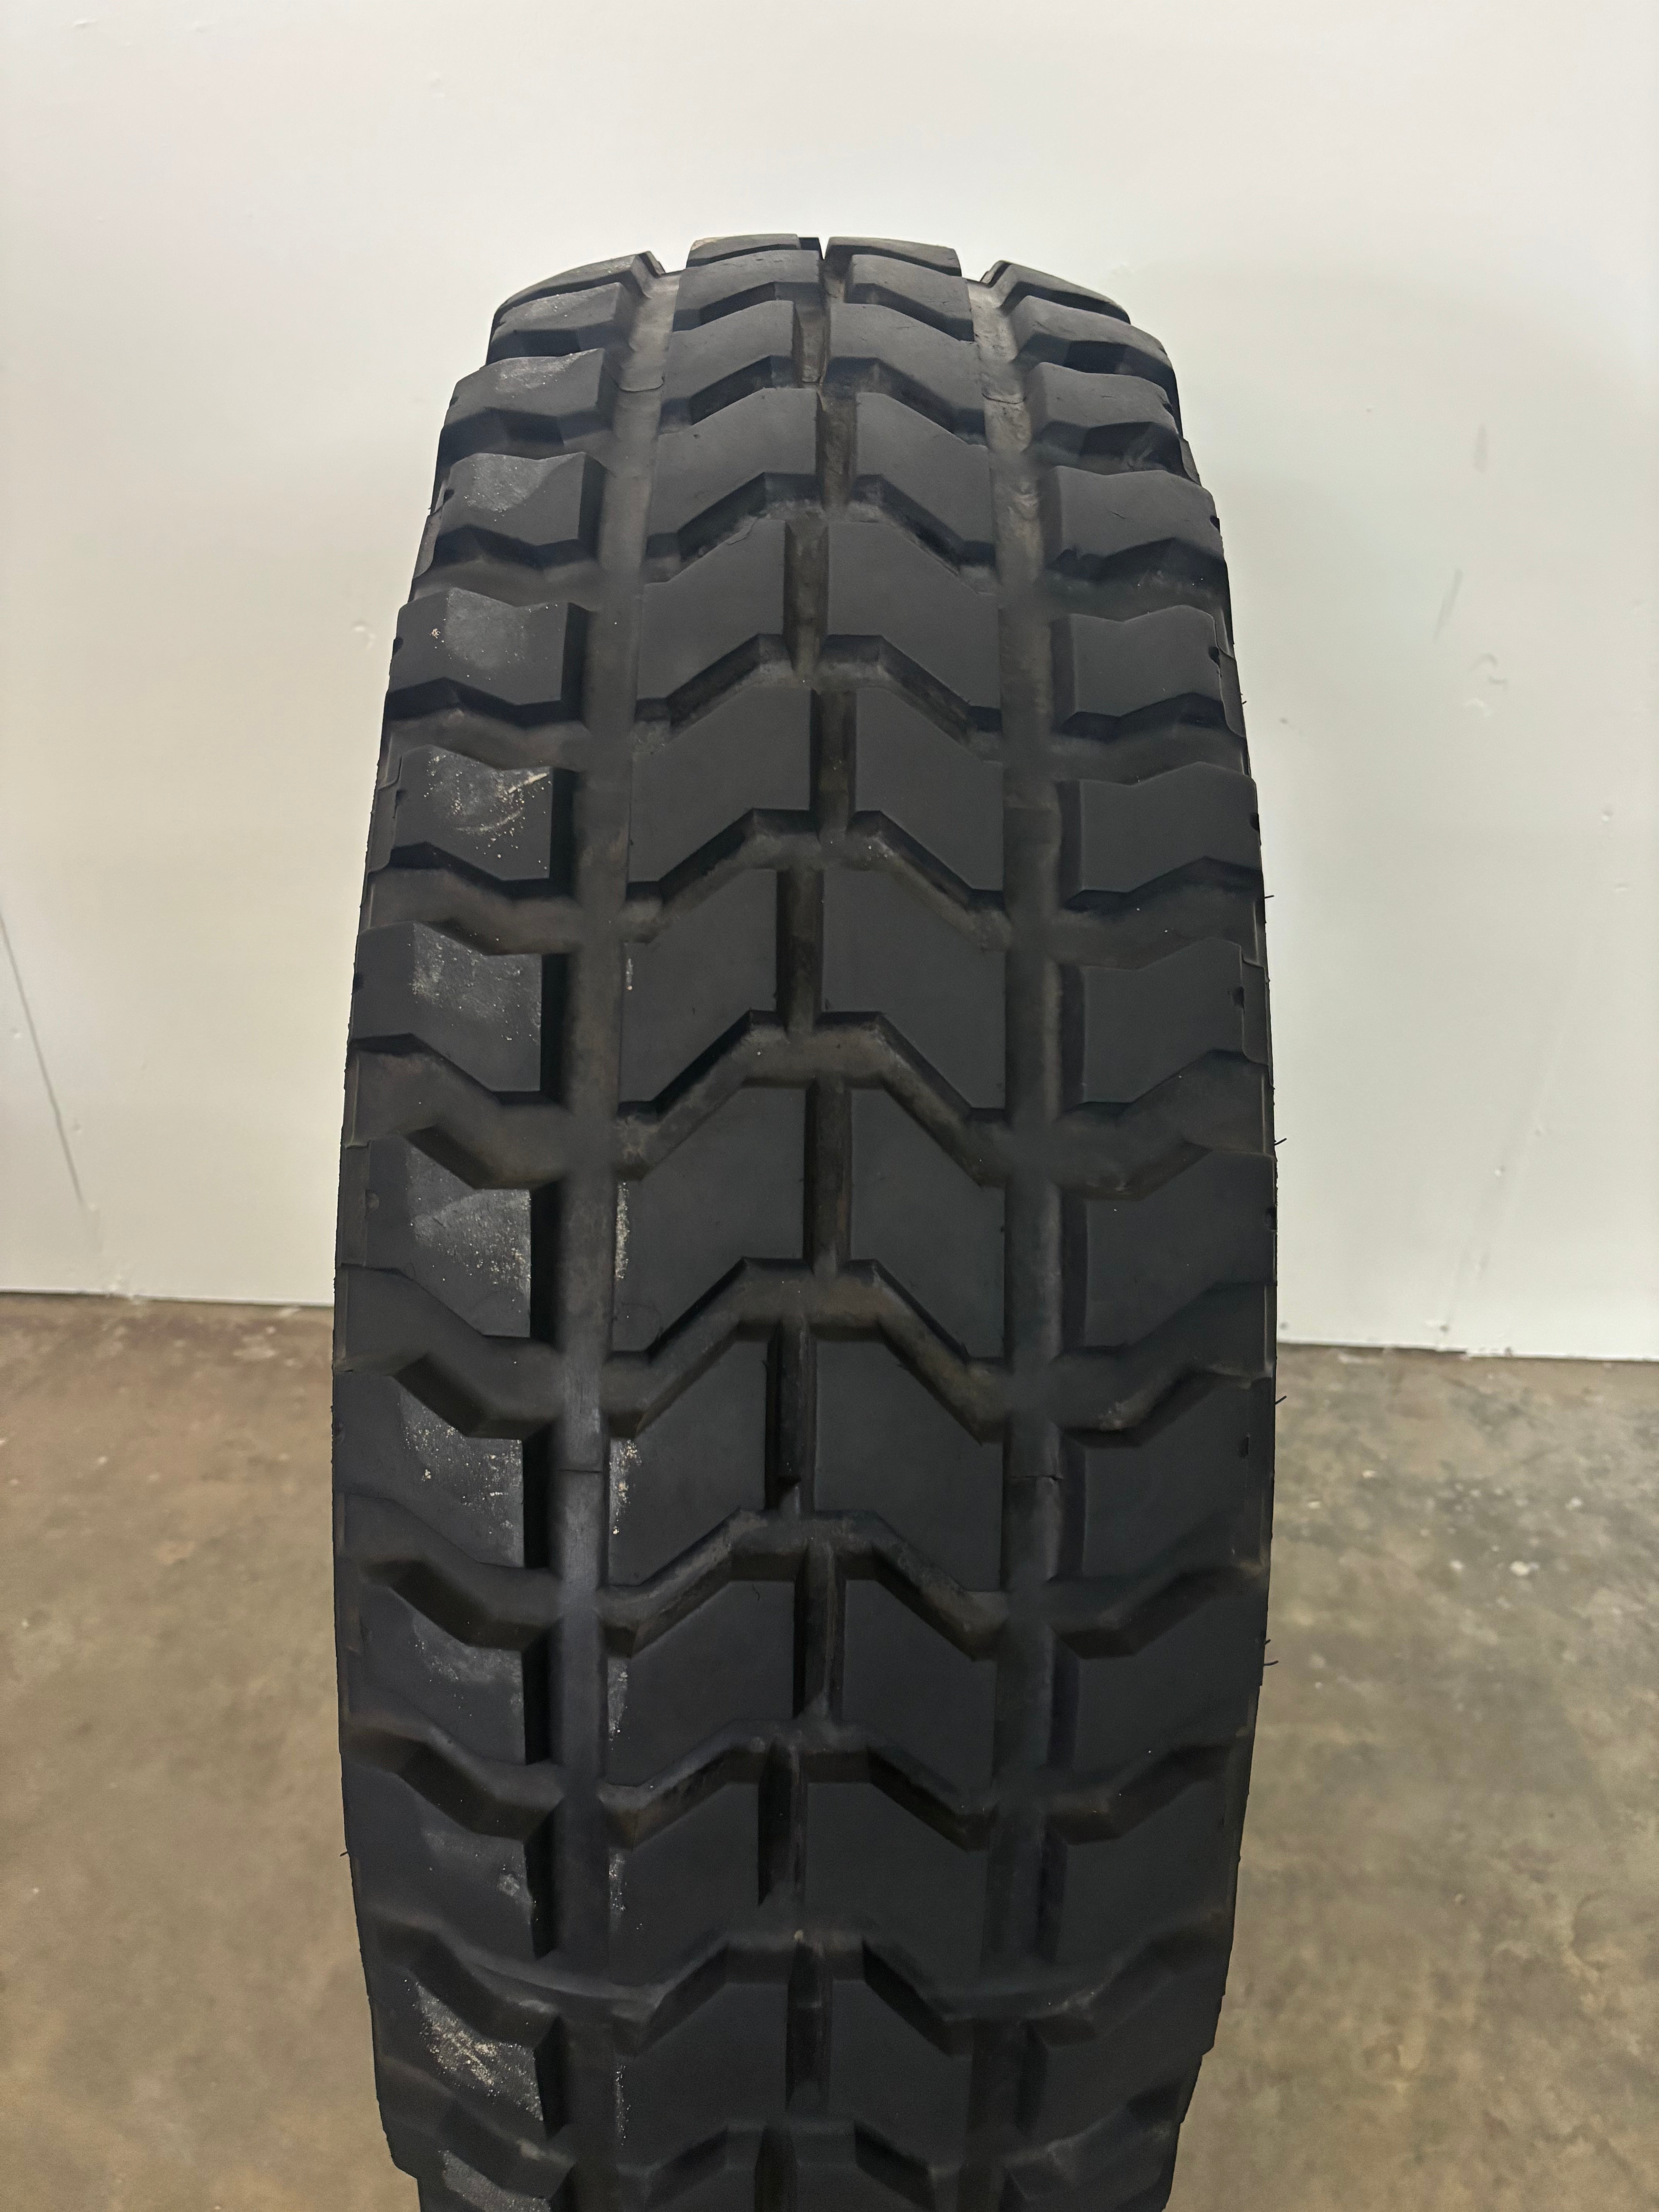 37×12.50R16.5LT Goodyear Wrangler MT Used (Hummer tire)